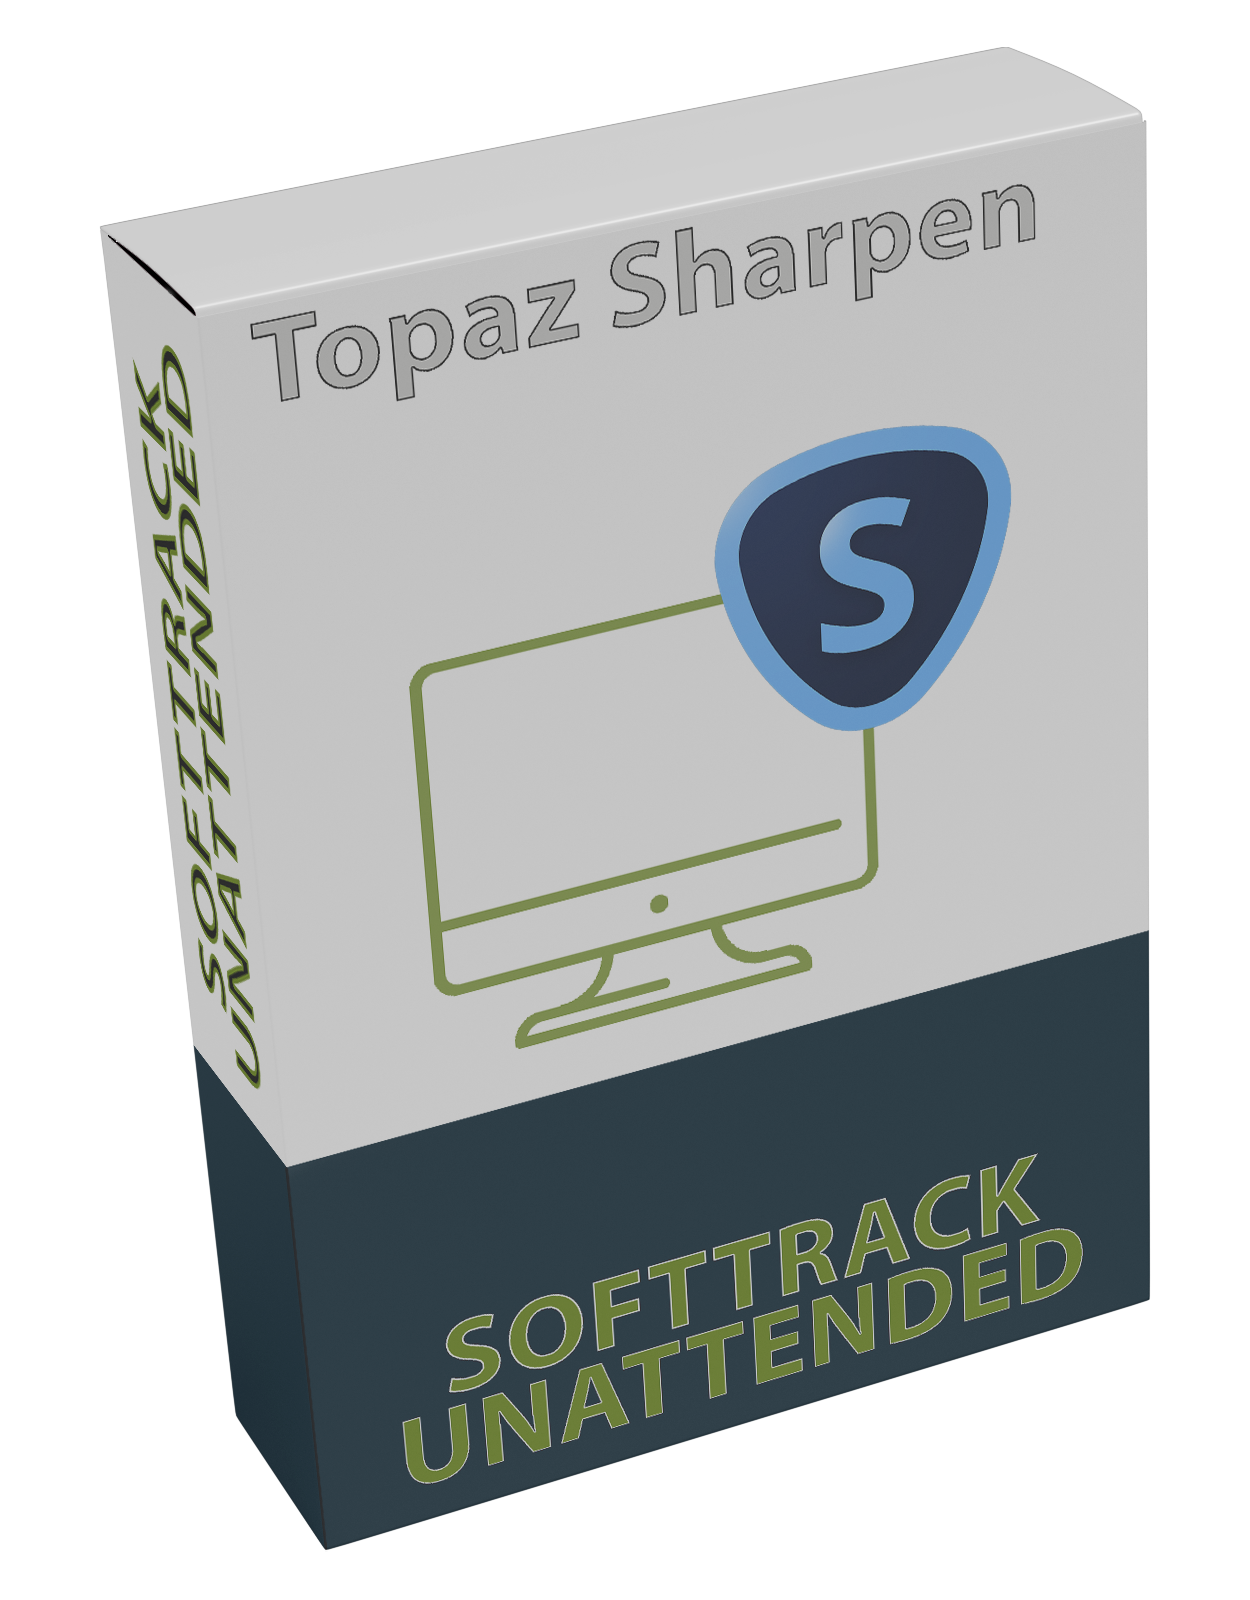 Topaz Sharpen AI v4.1.0 (x64) Pre activation + Uitleg PDF